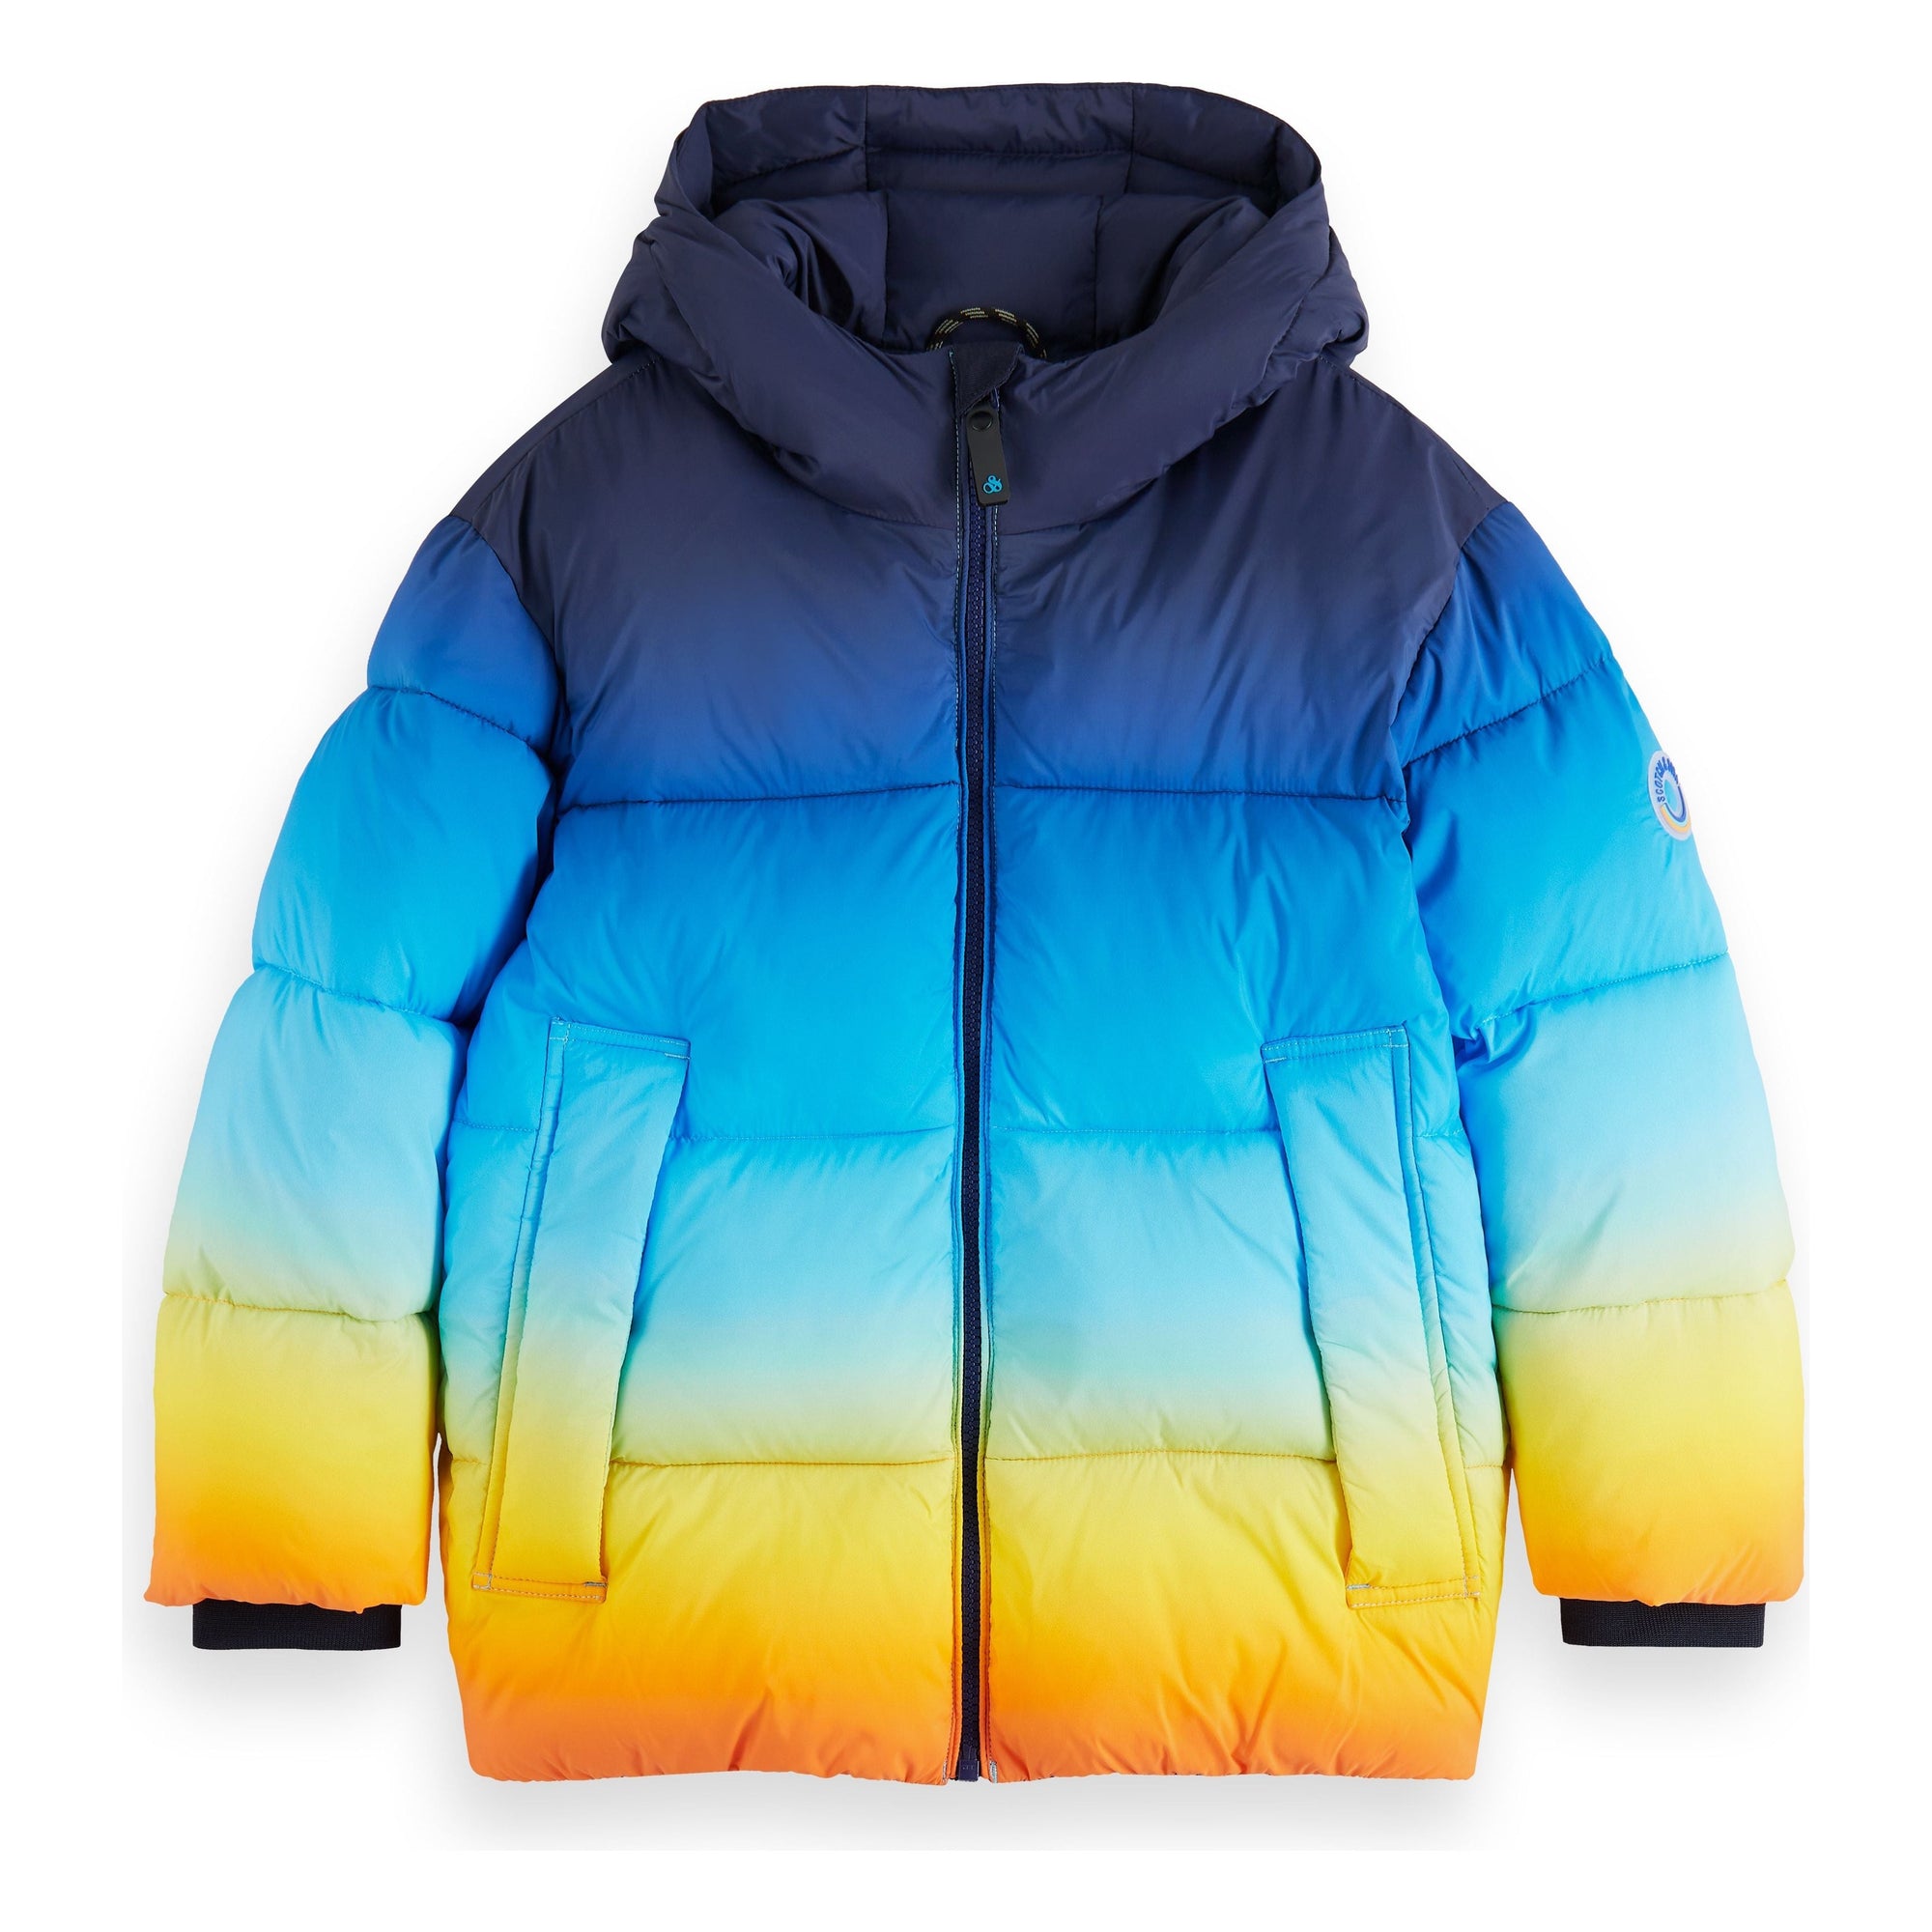 Colourful Padded Jacket